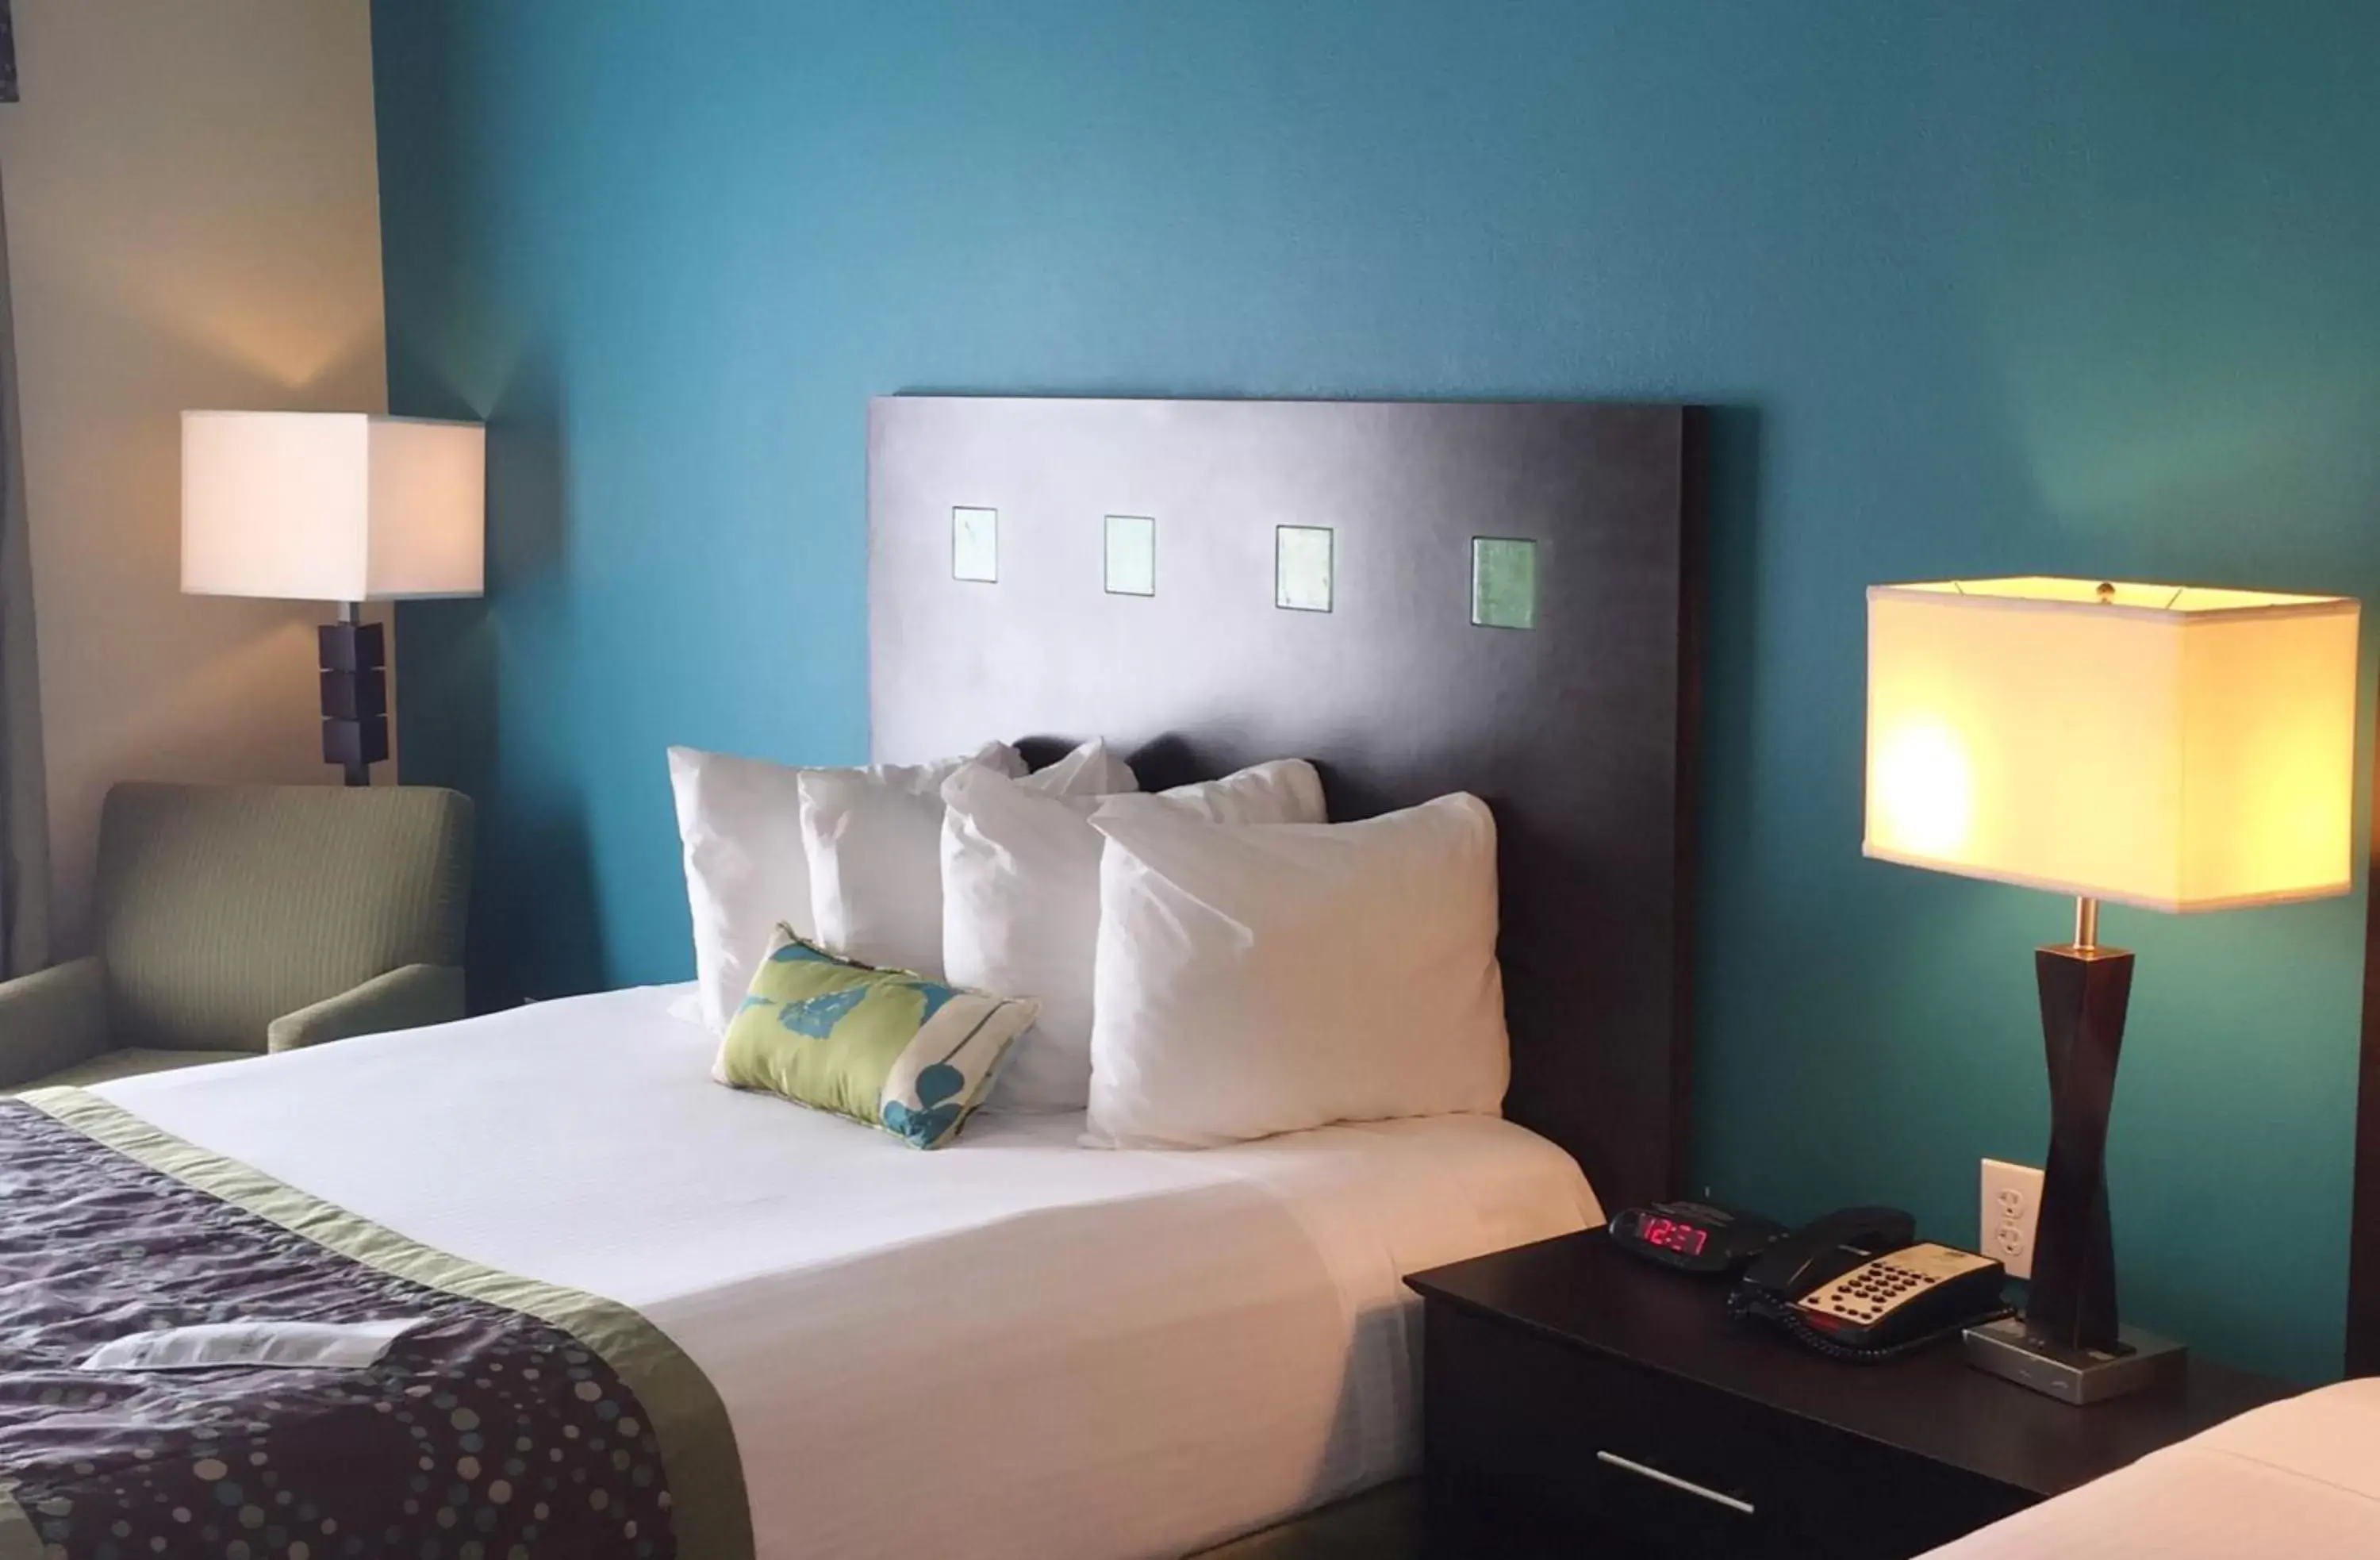 Bedroom, Room Photo in Best Western Plus DeSoto Inn & Suites